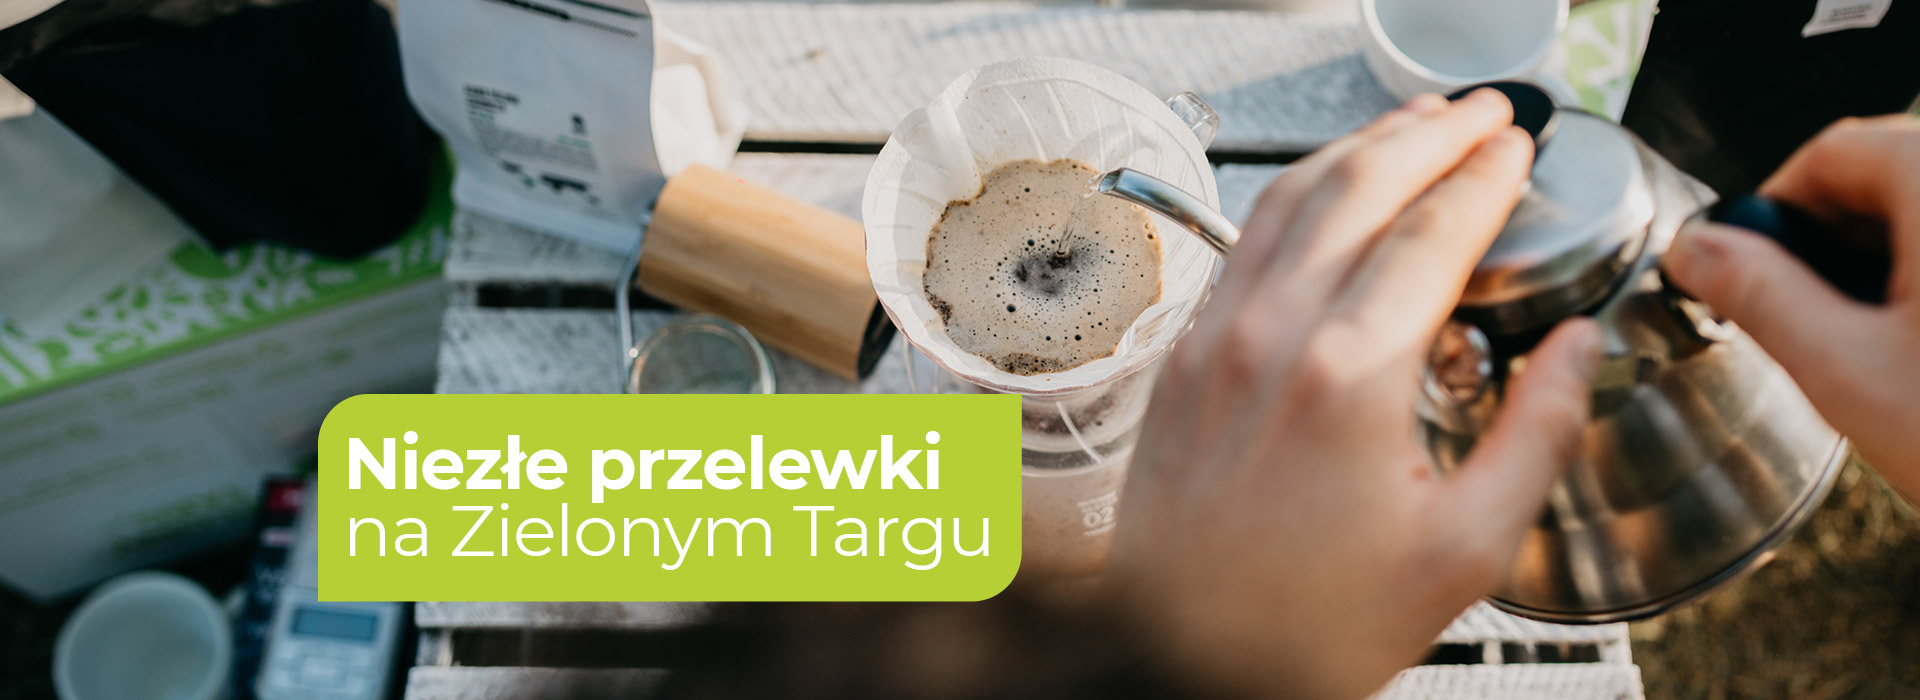  Drip, Pour Over, metoda przelewowa lub inaczej sączeniowa, filtrowana. Jest to jedna z metod alternatywnych parzenia kawy. Sprawdź na ZielonyTarg.pl  | ZielonyTarg.pl